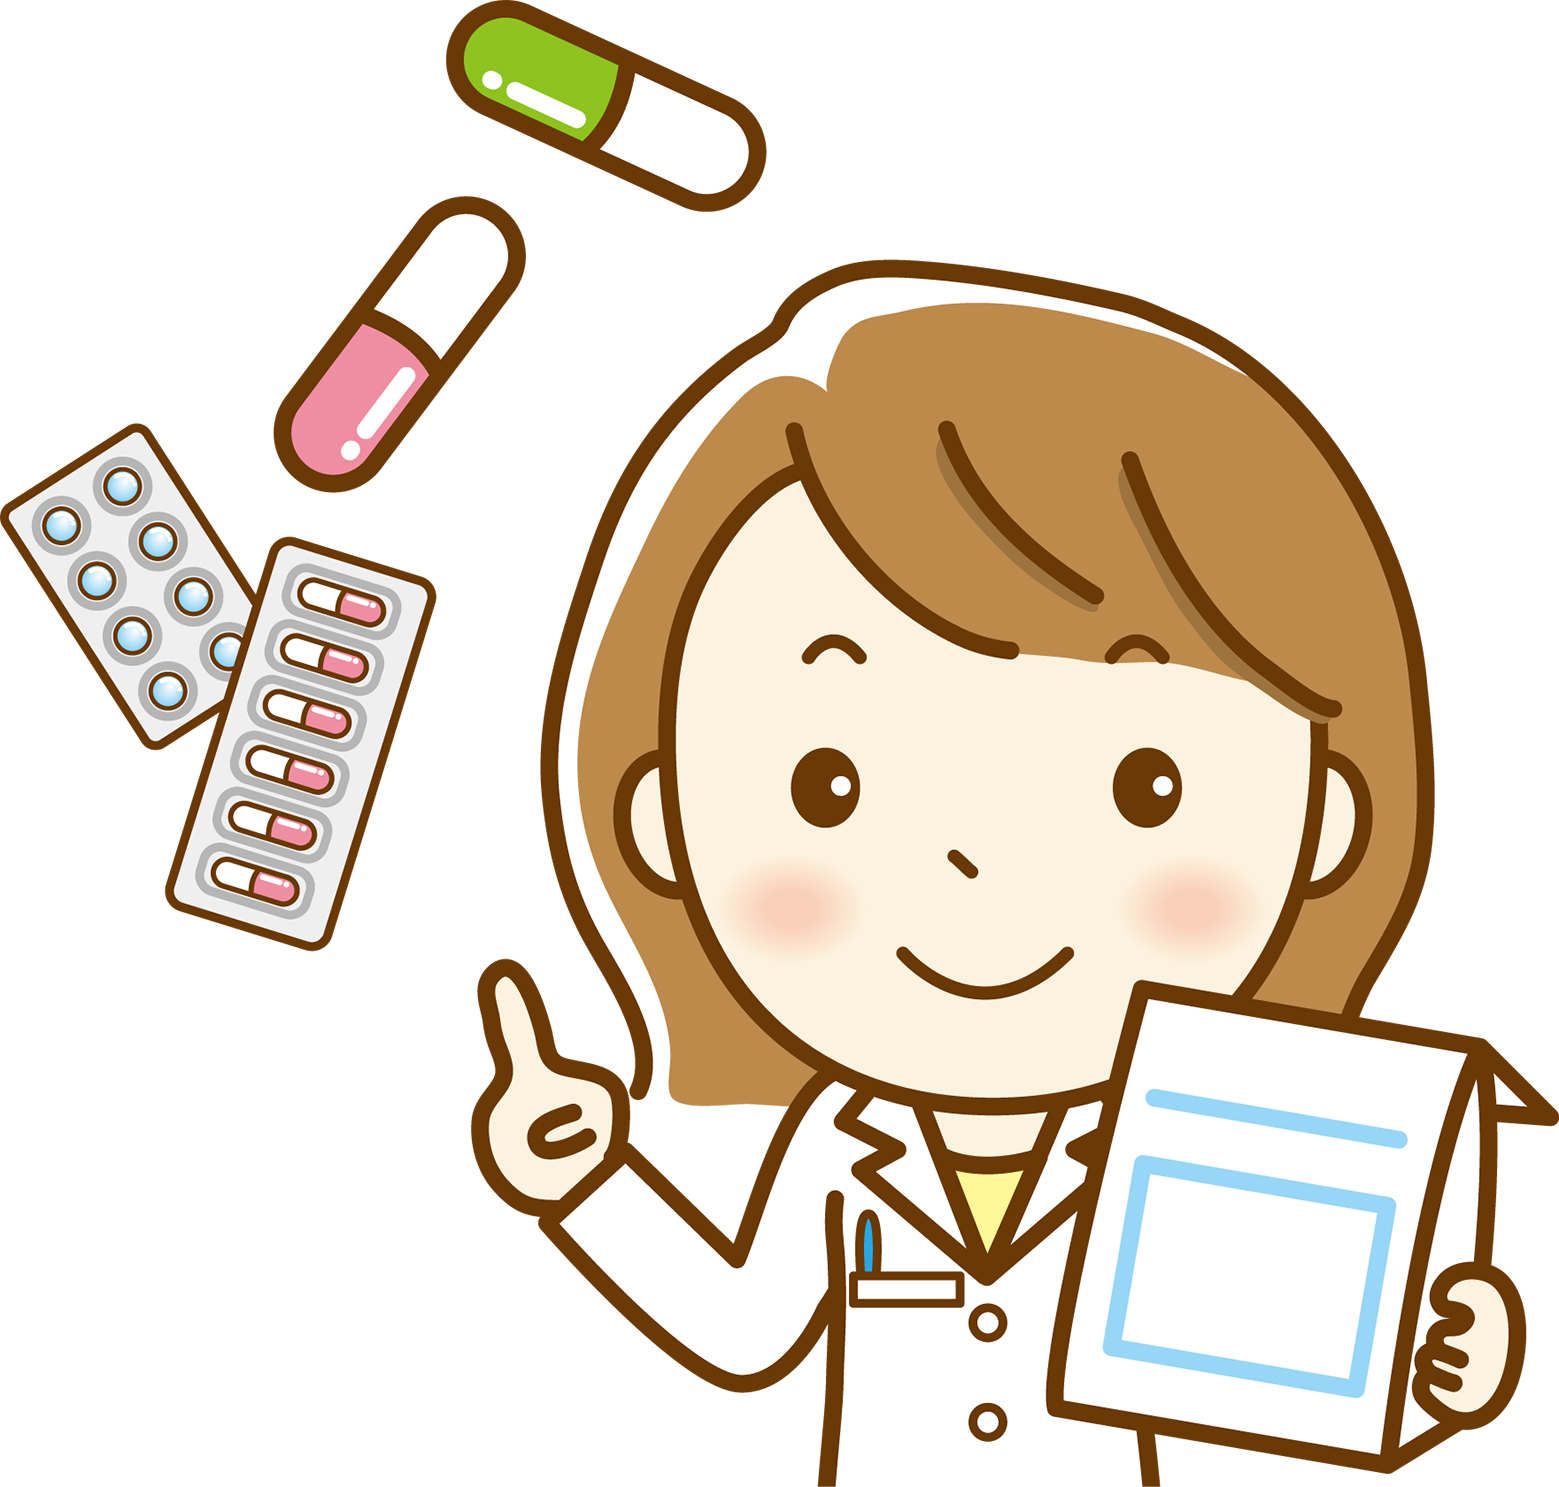 子供用の薬について知ろう。お店で買える薬について話がきけます。託児あり！9月25日(月)草津市立まちづくりセンターで開催！